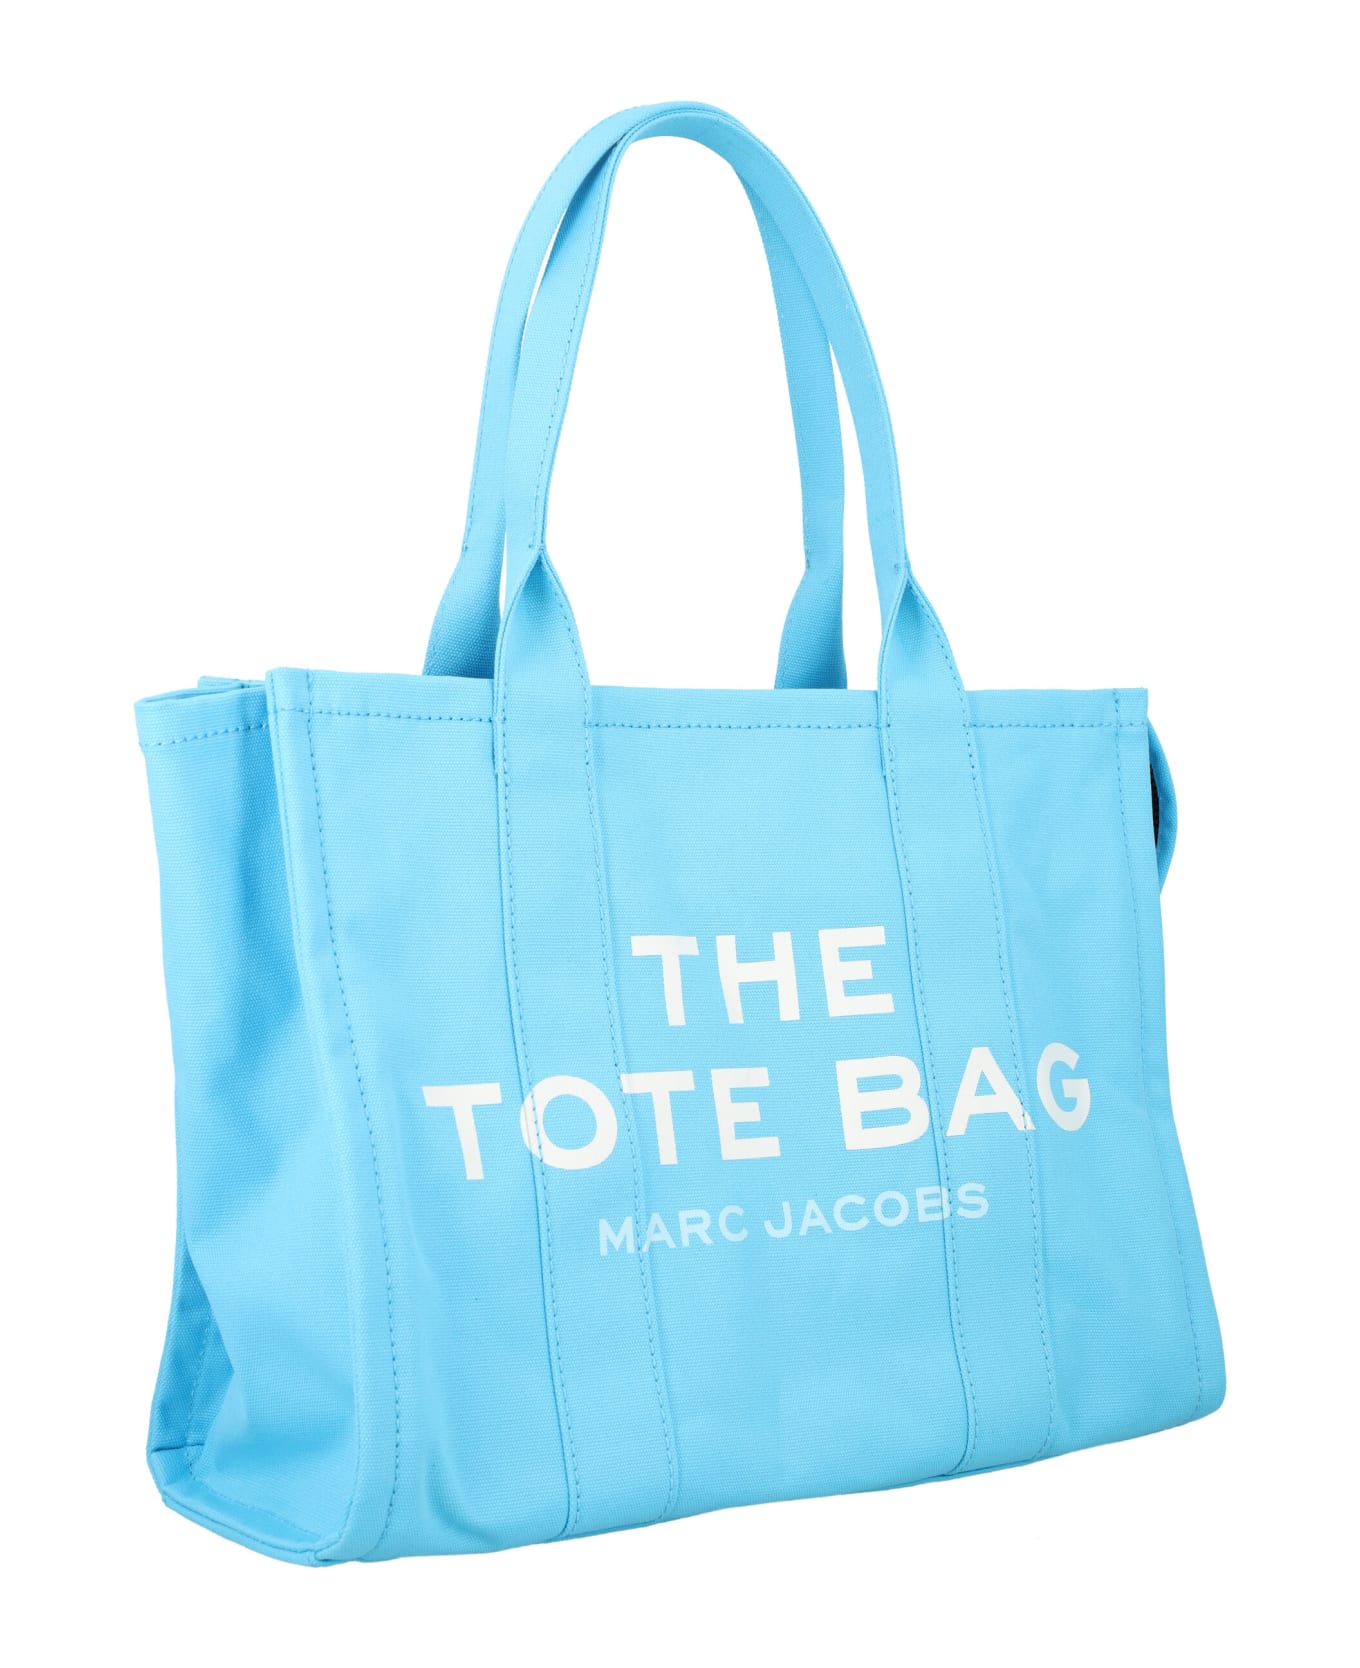 Marc Jacobs The Tote Bag - Aqua